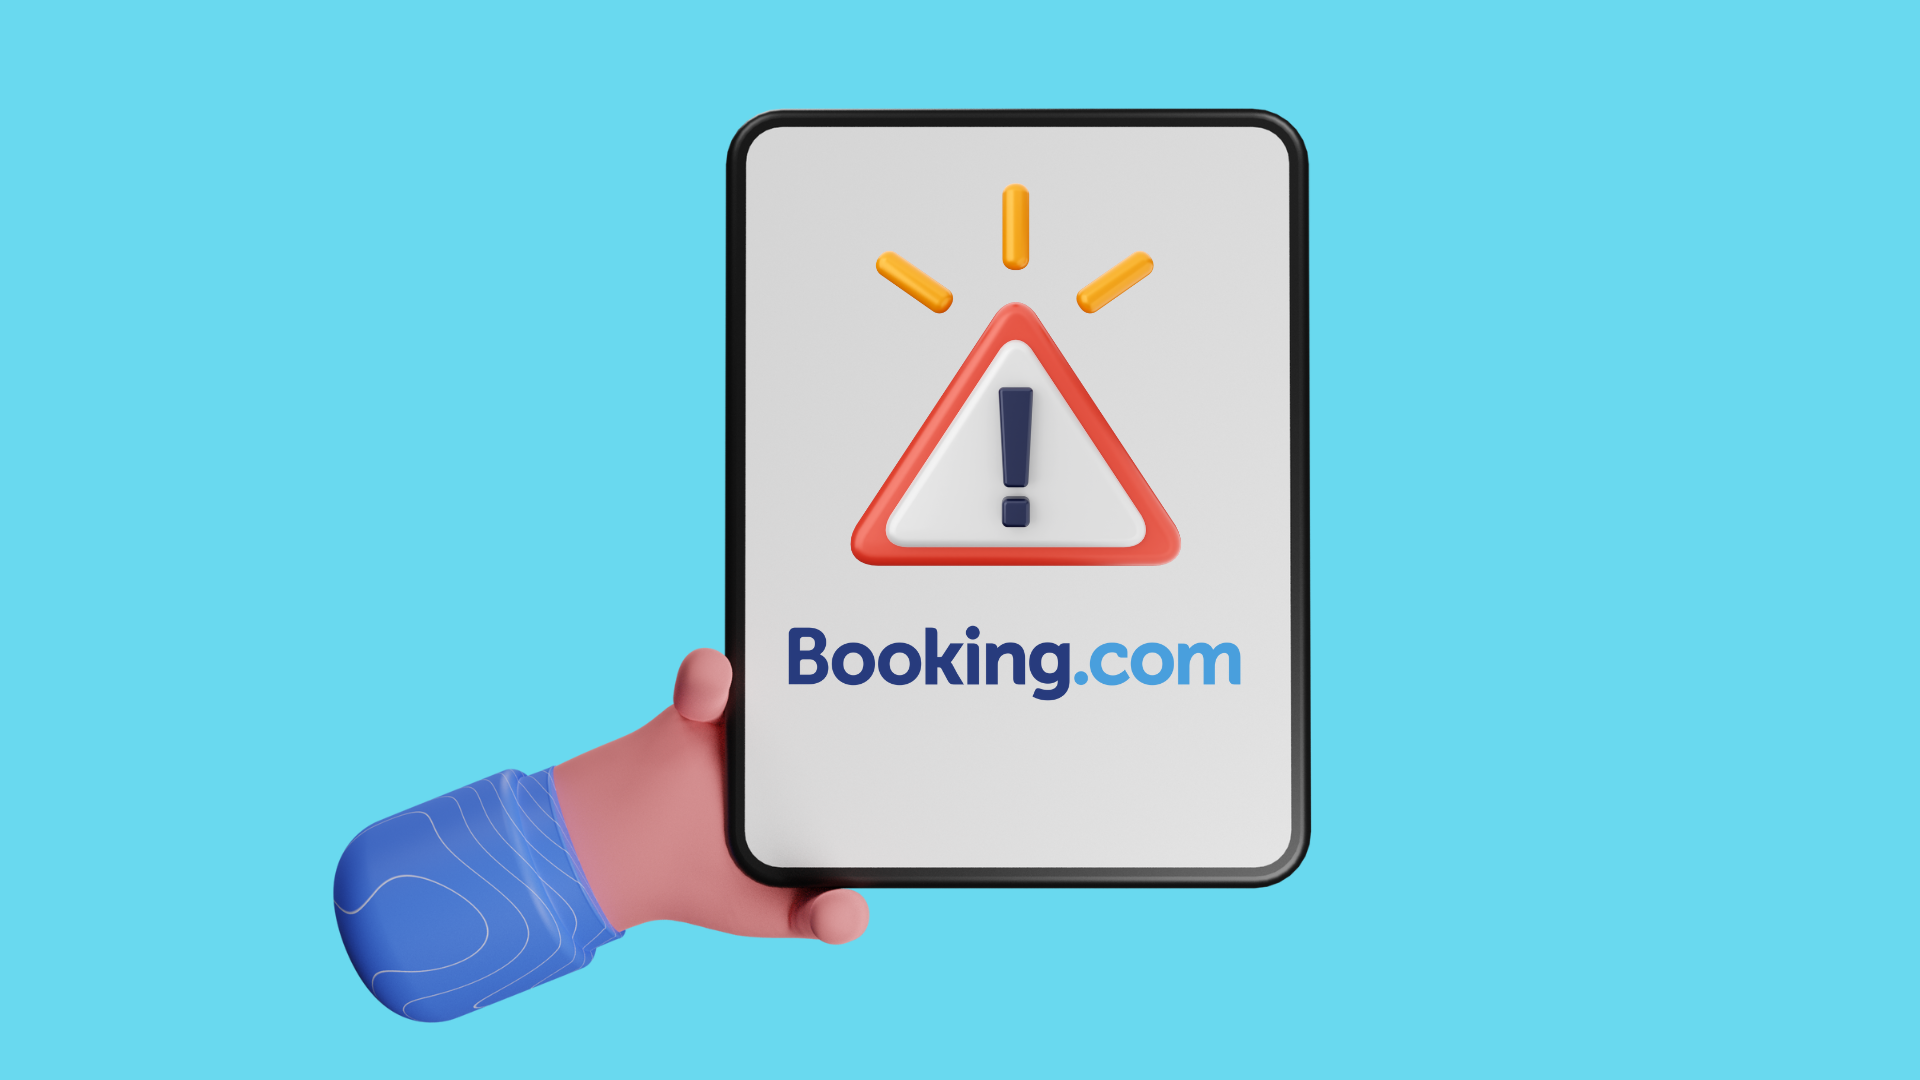 Hackeo en Hoteles: Redirección a Falso Booking.com para Robar Tarjetas